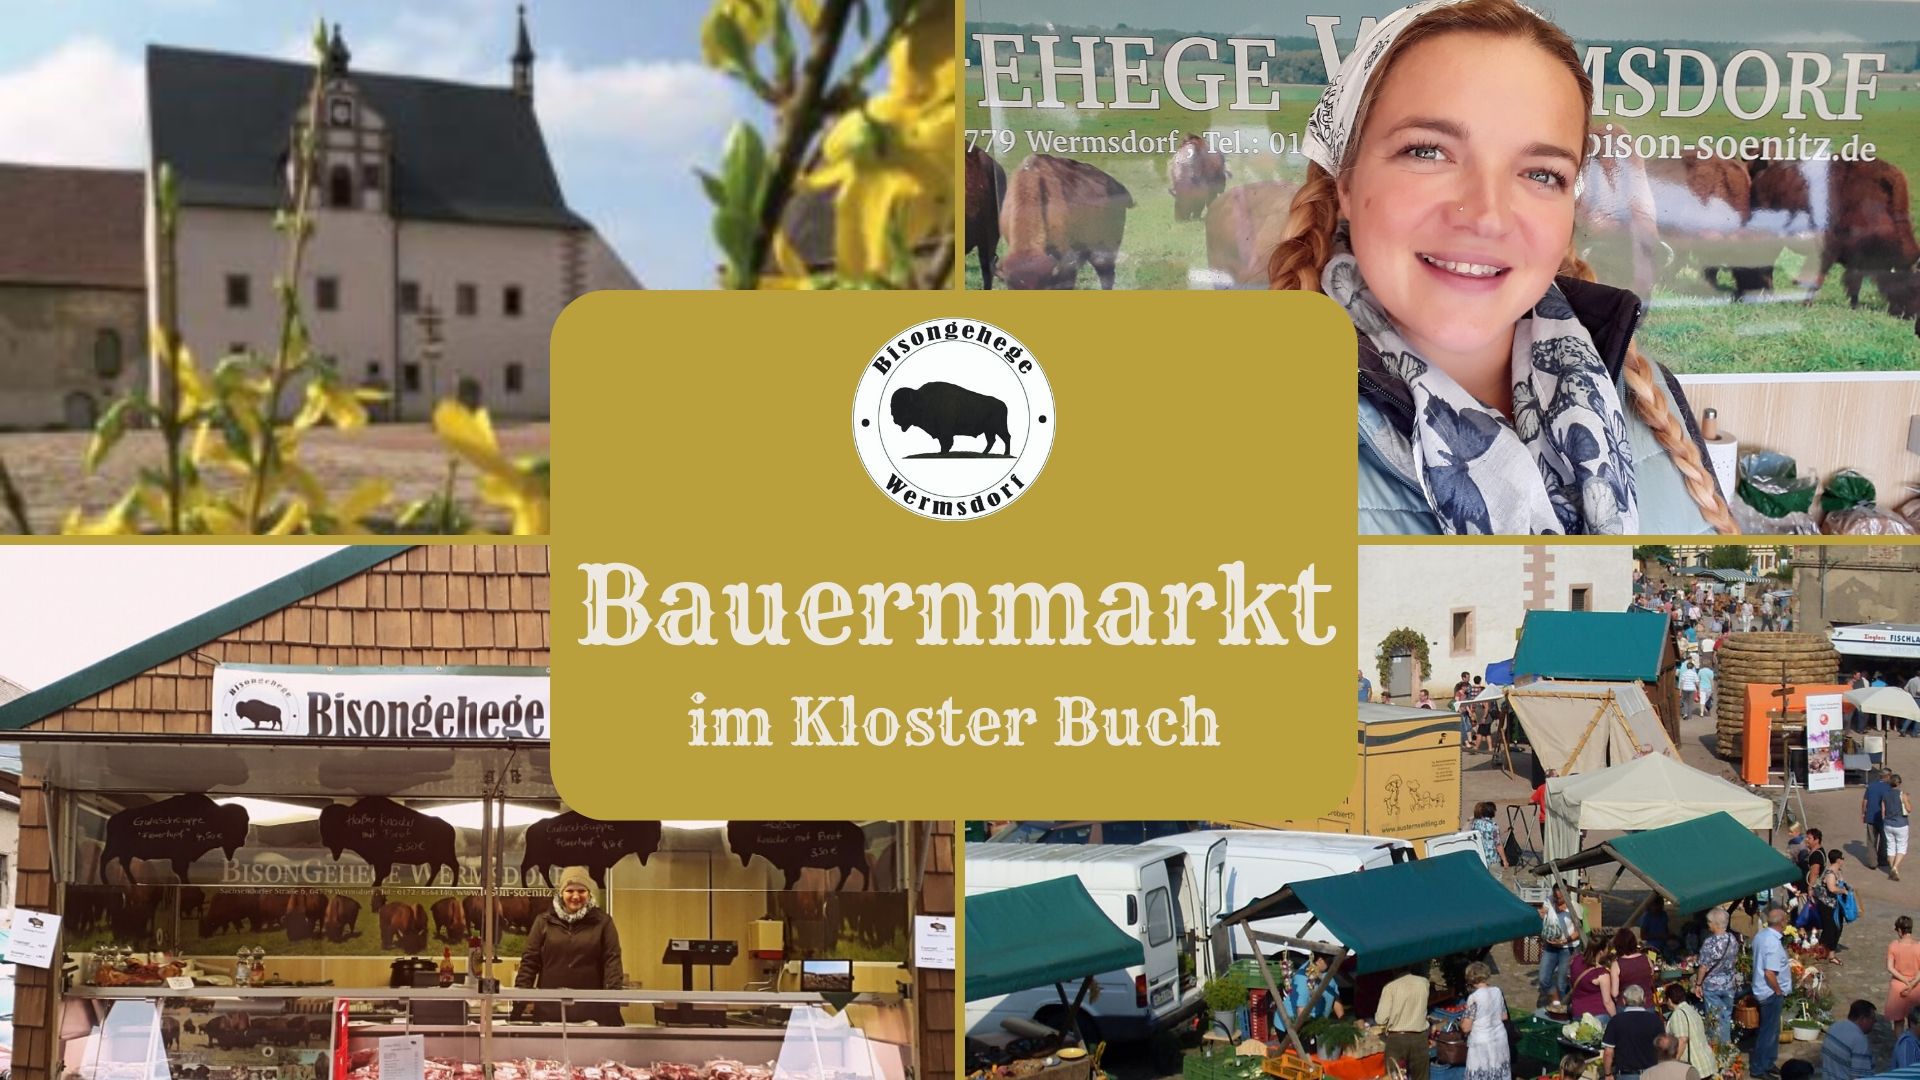 Bauernmarkt Kloster Buch Bisongehege Wermsdorf